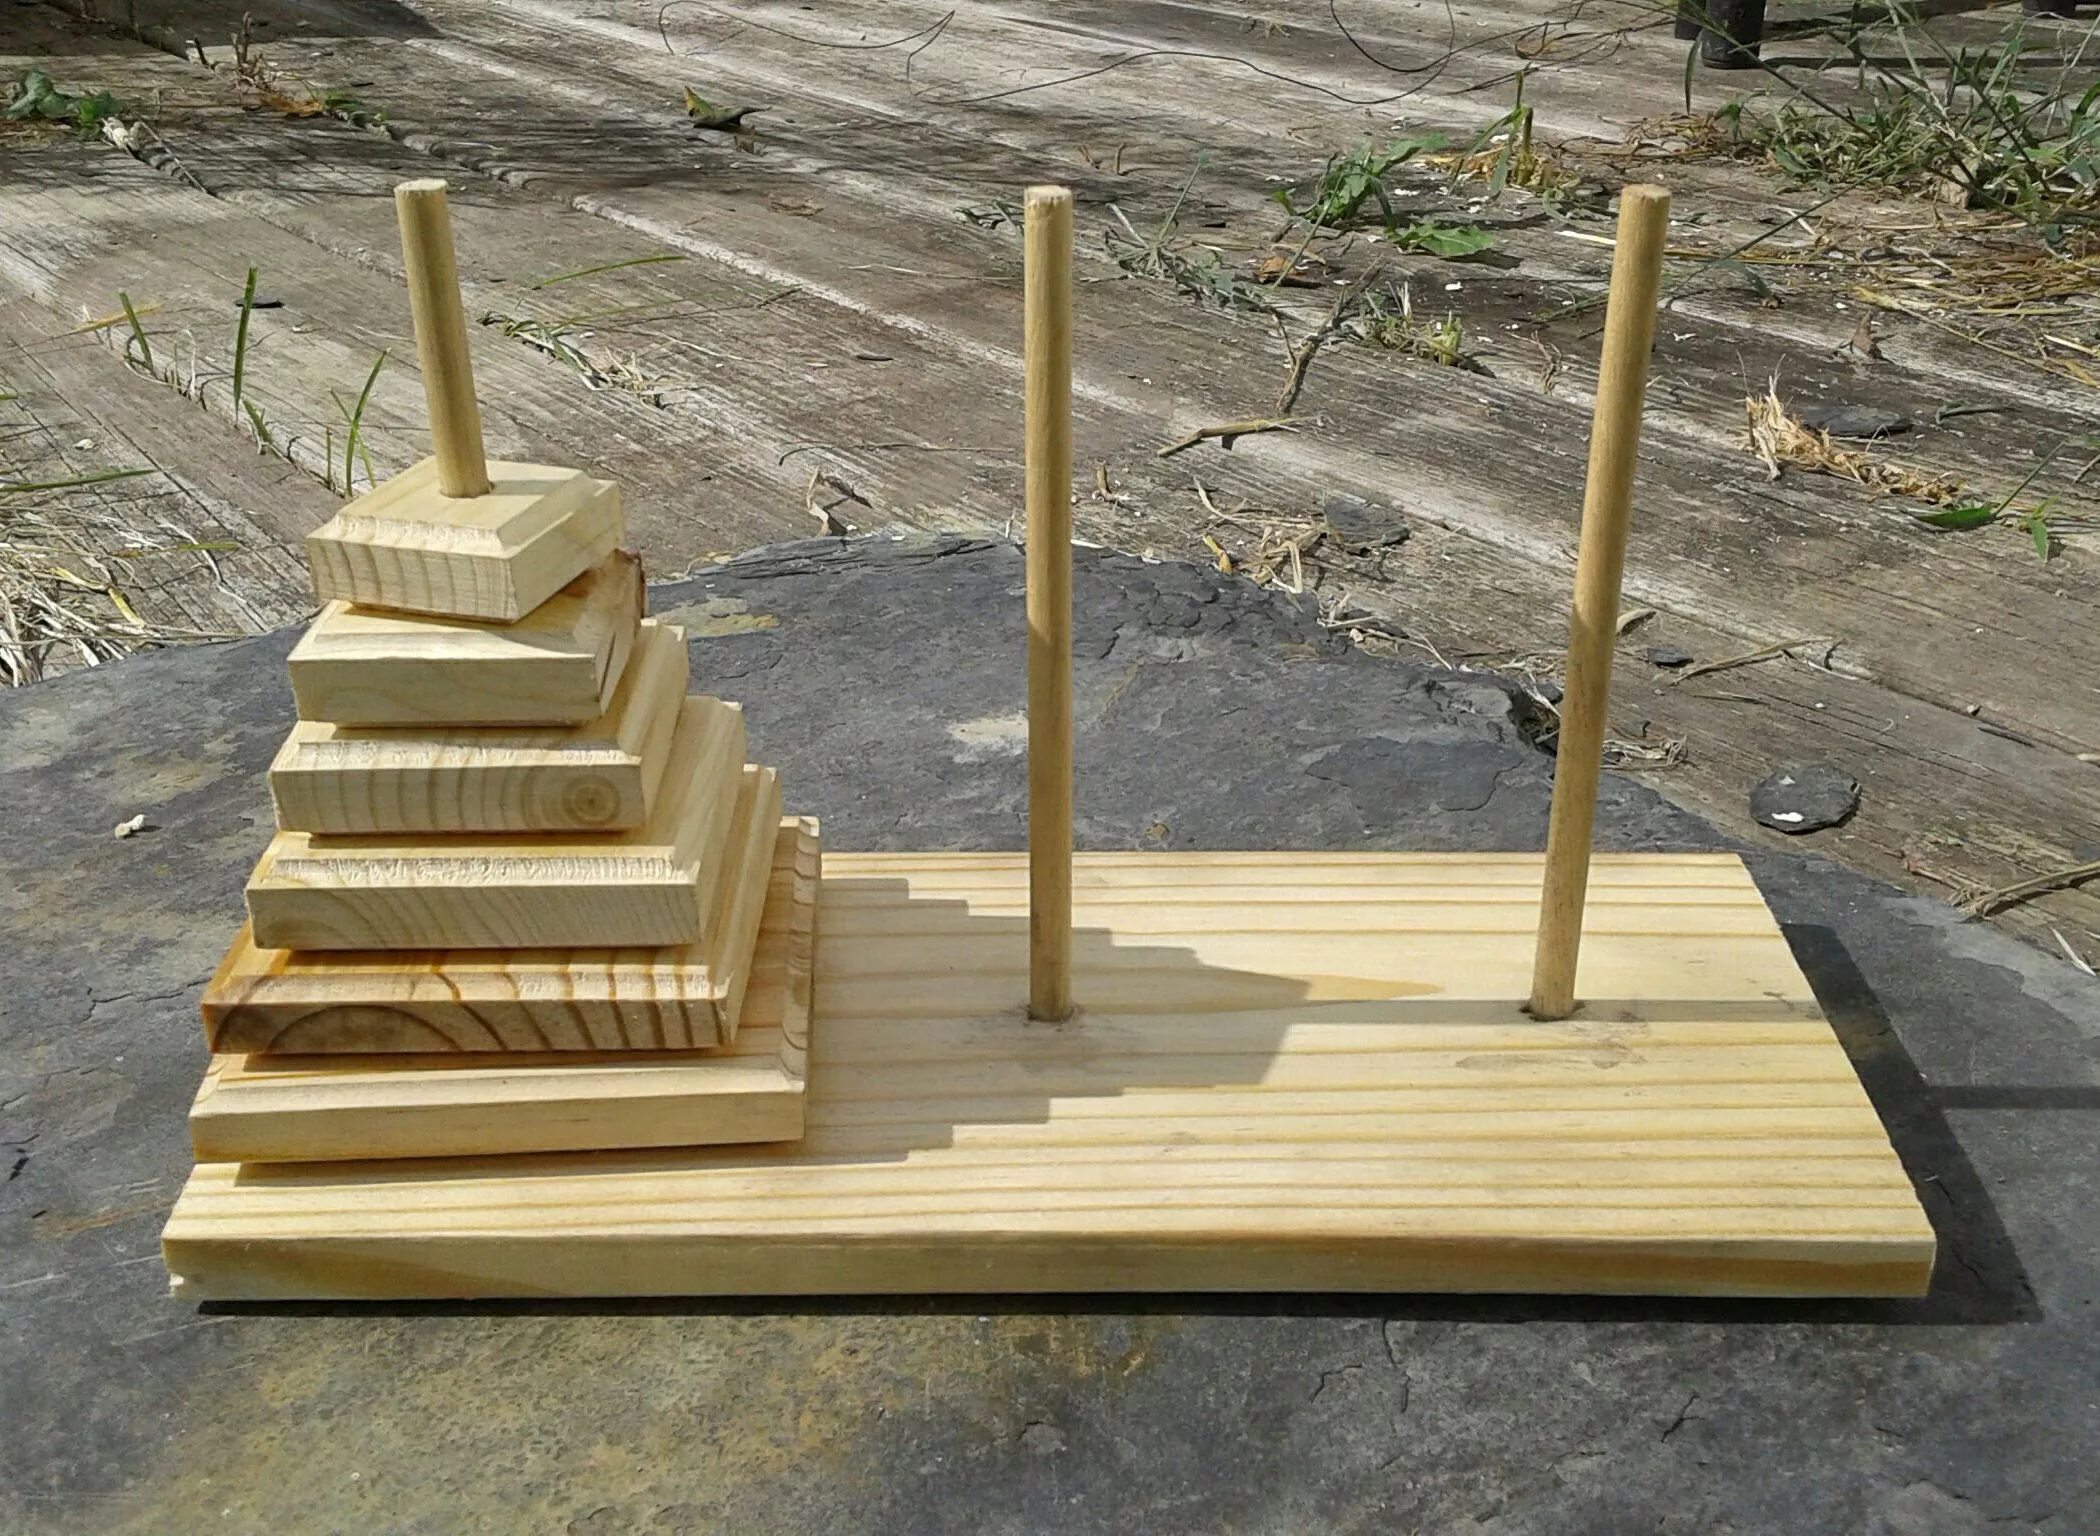 Игра ханойская башня. Ханойская пирамида. Ханойская башня Легенда. Головоломка «Ханойская башня». Игры из деревянных изделий.